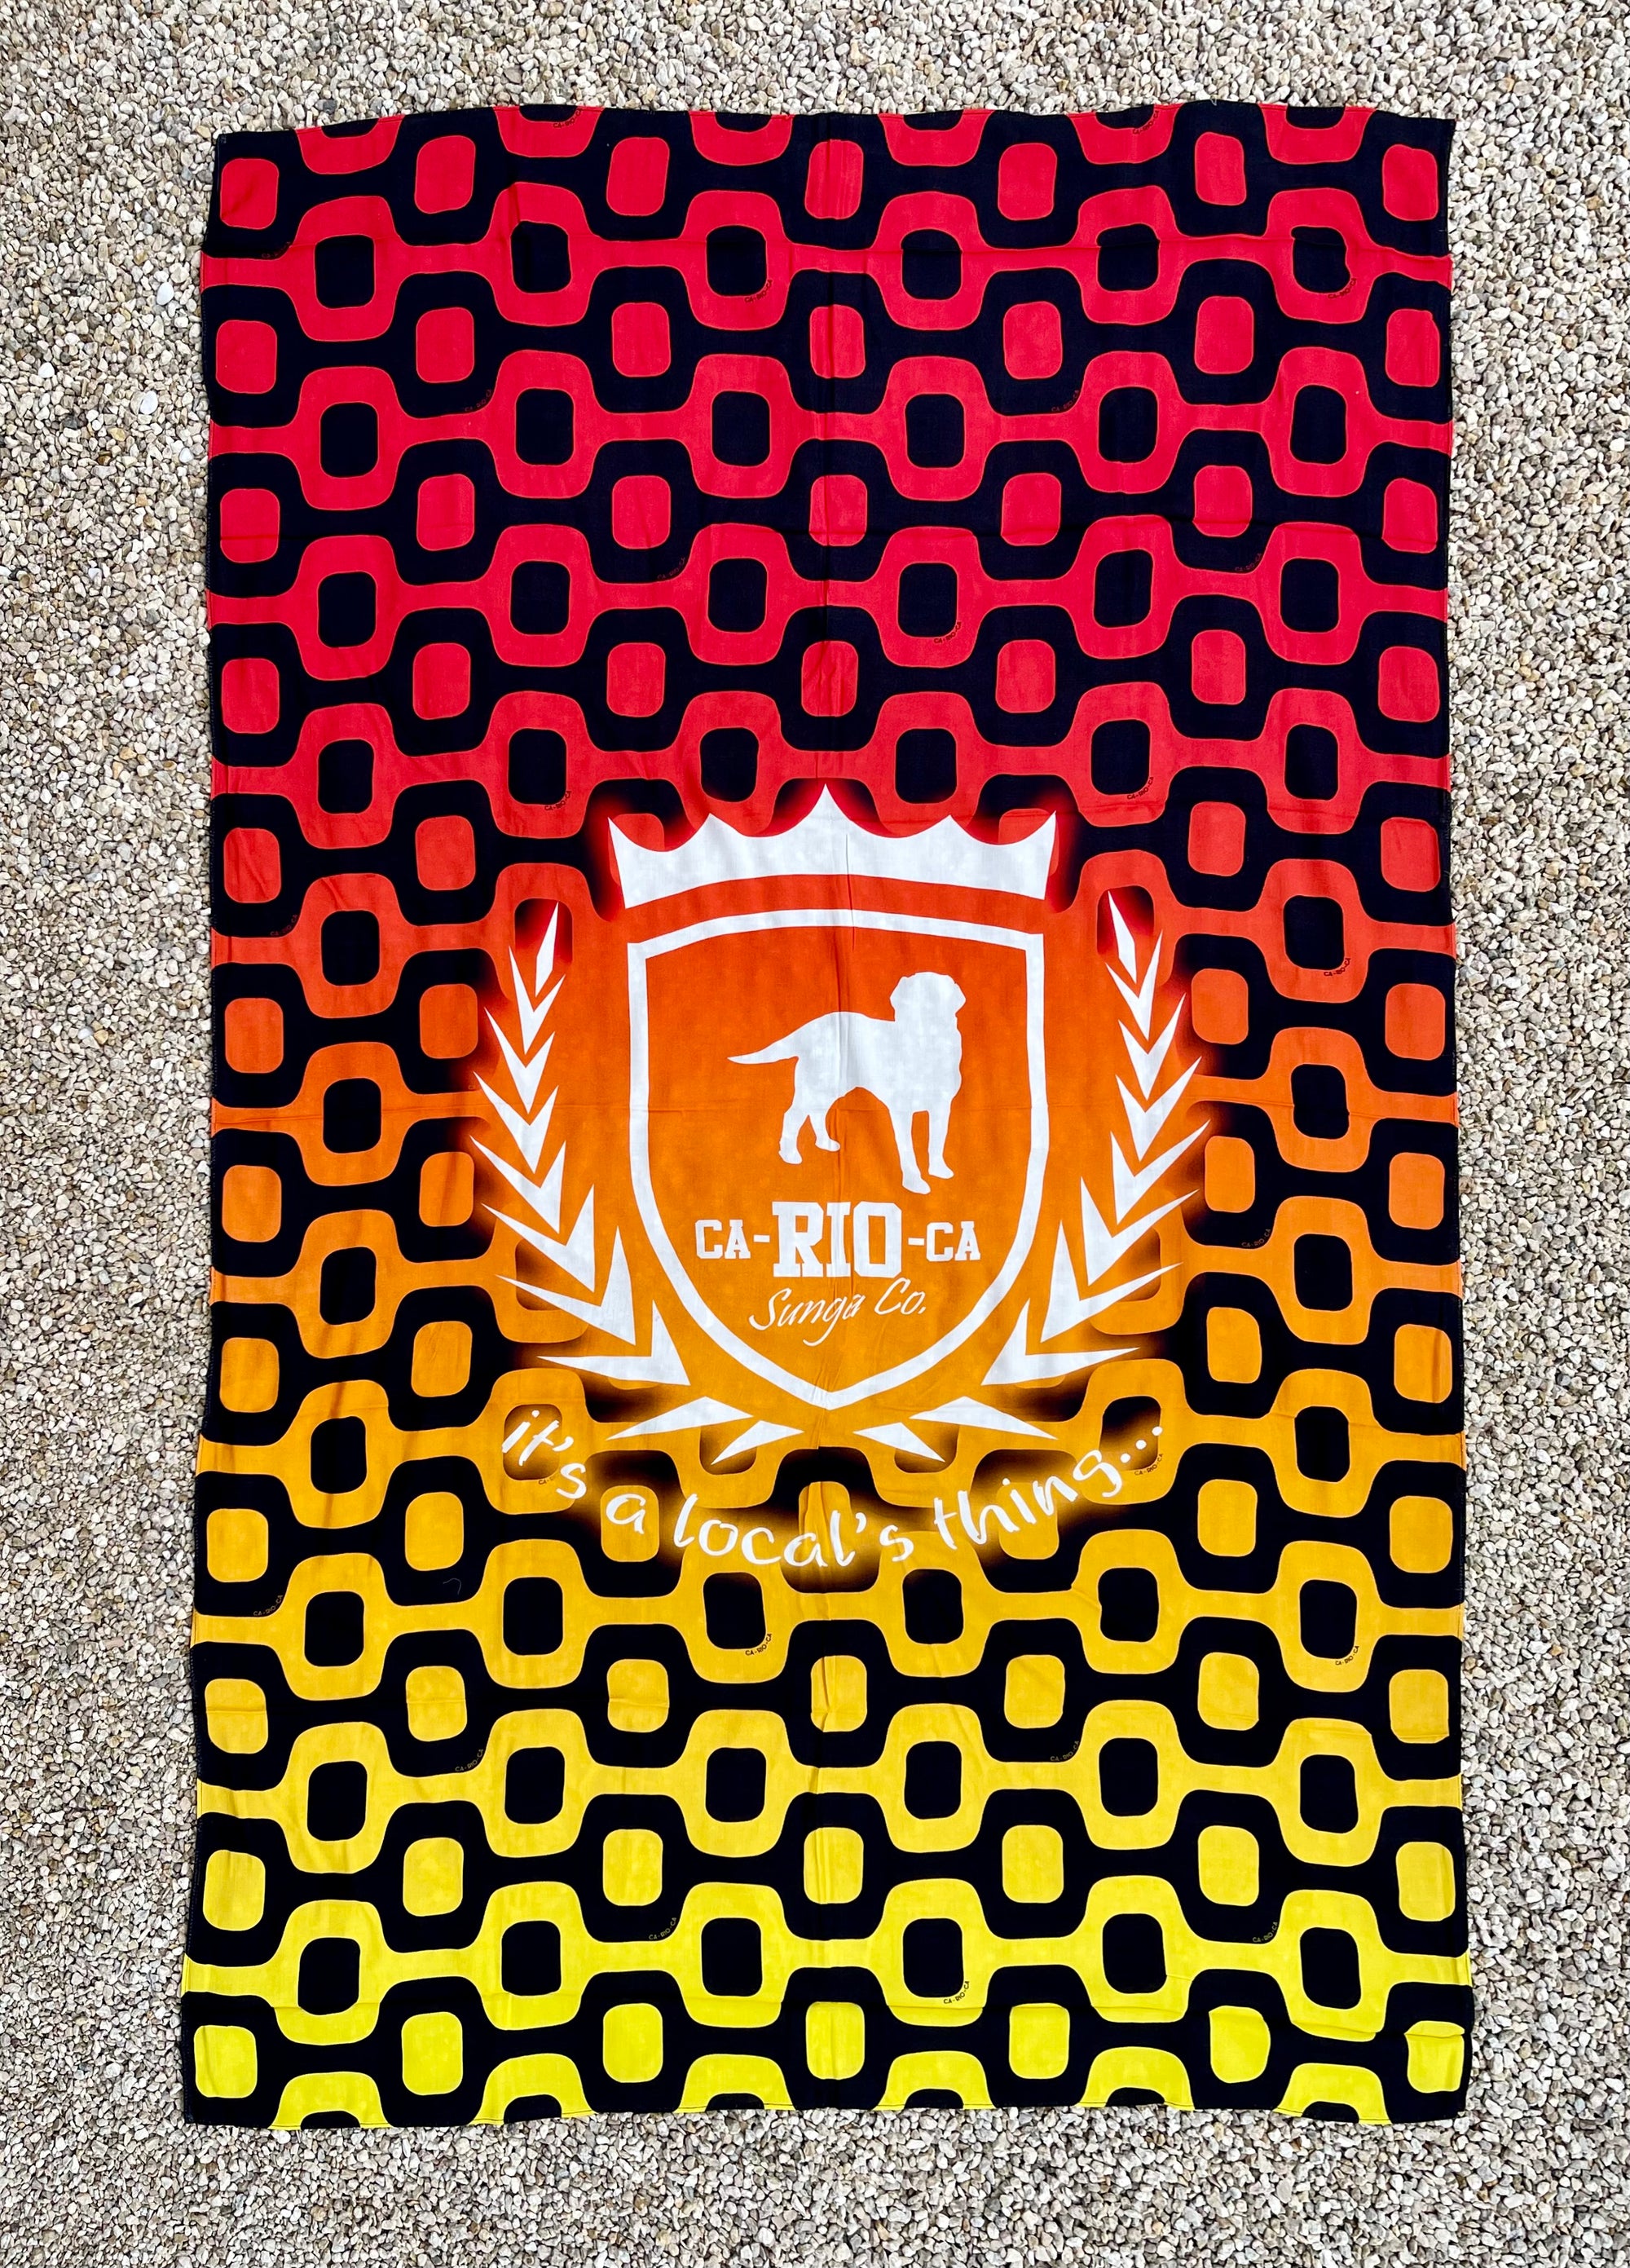 CA-RIO-CA Crest Logo Canga de Praia- Brazilian Beach Towel (Sarong / Pareo)